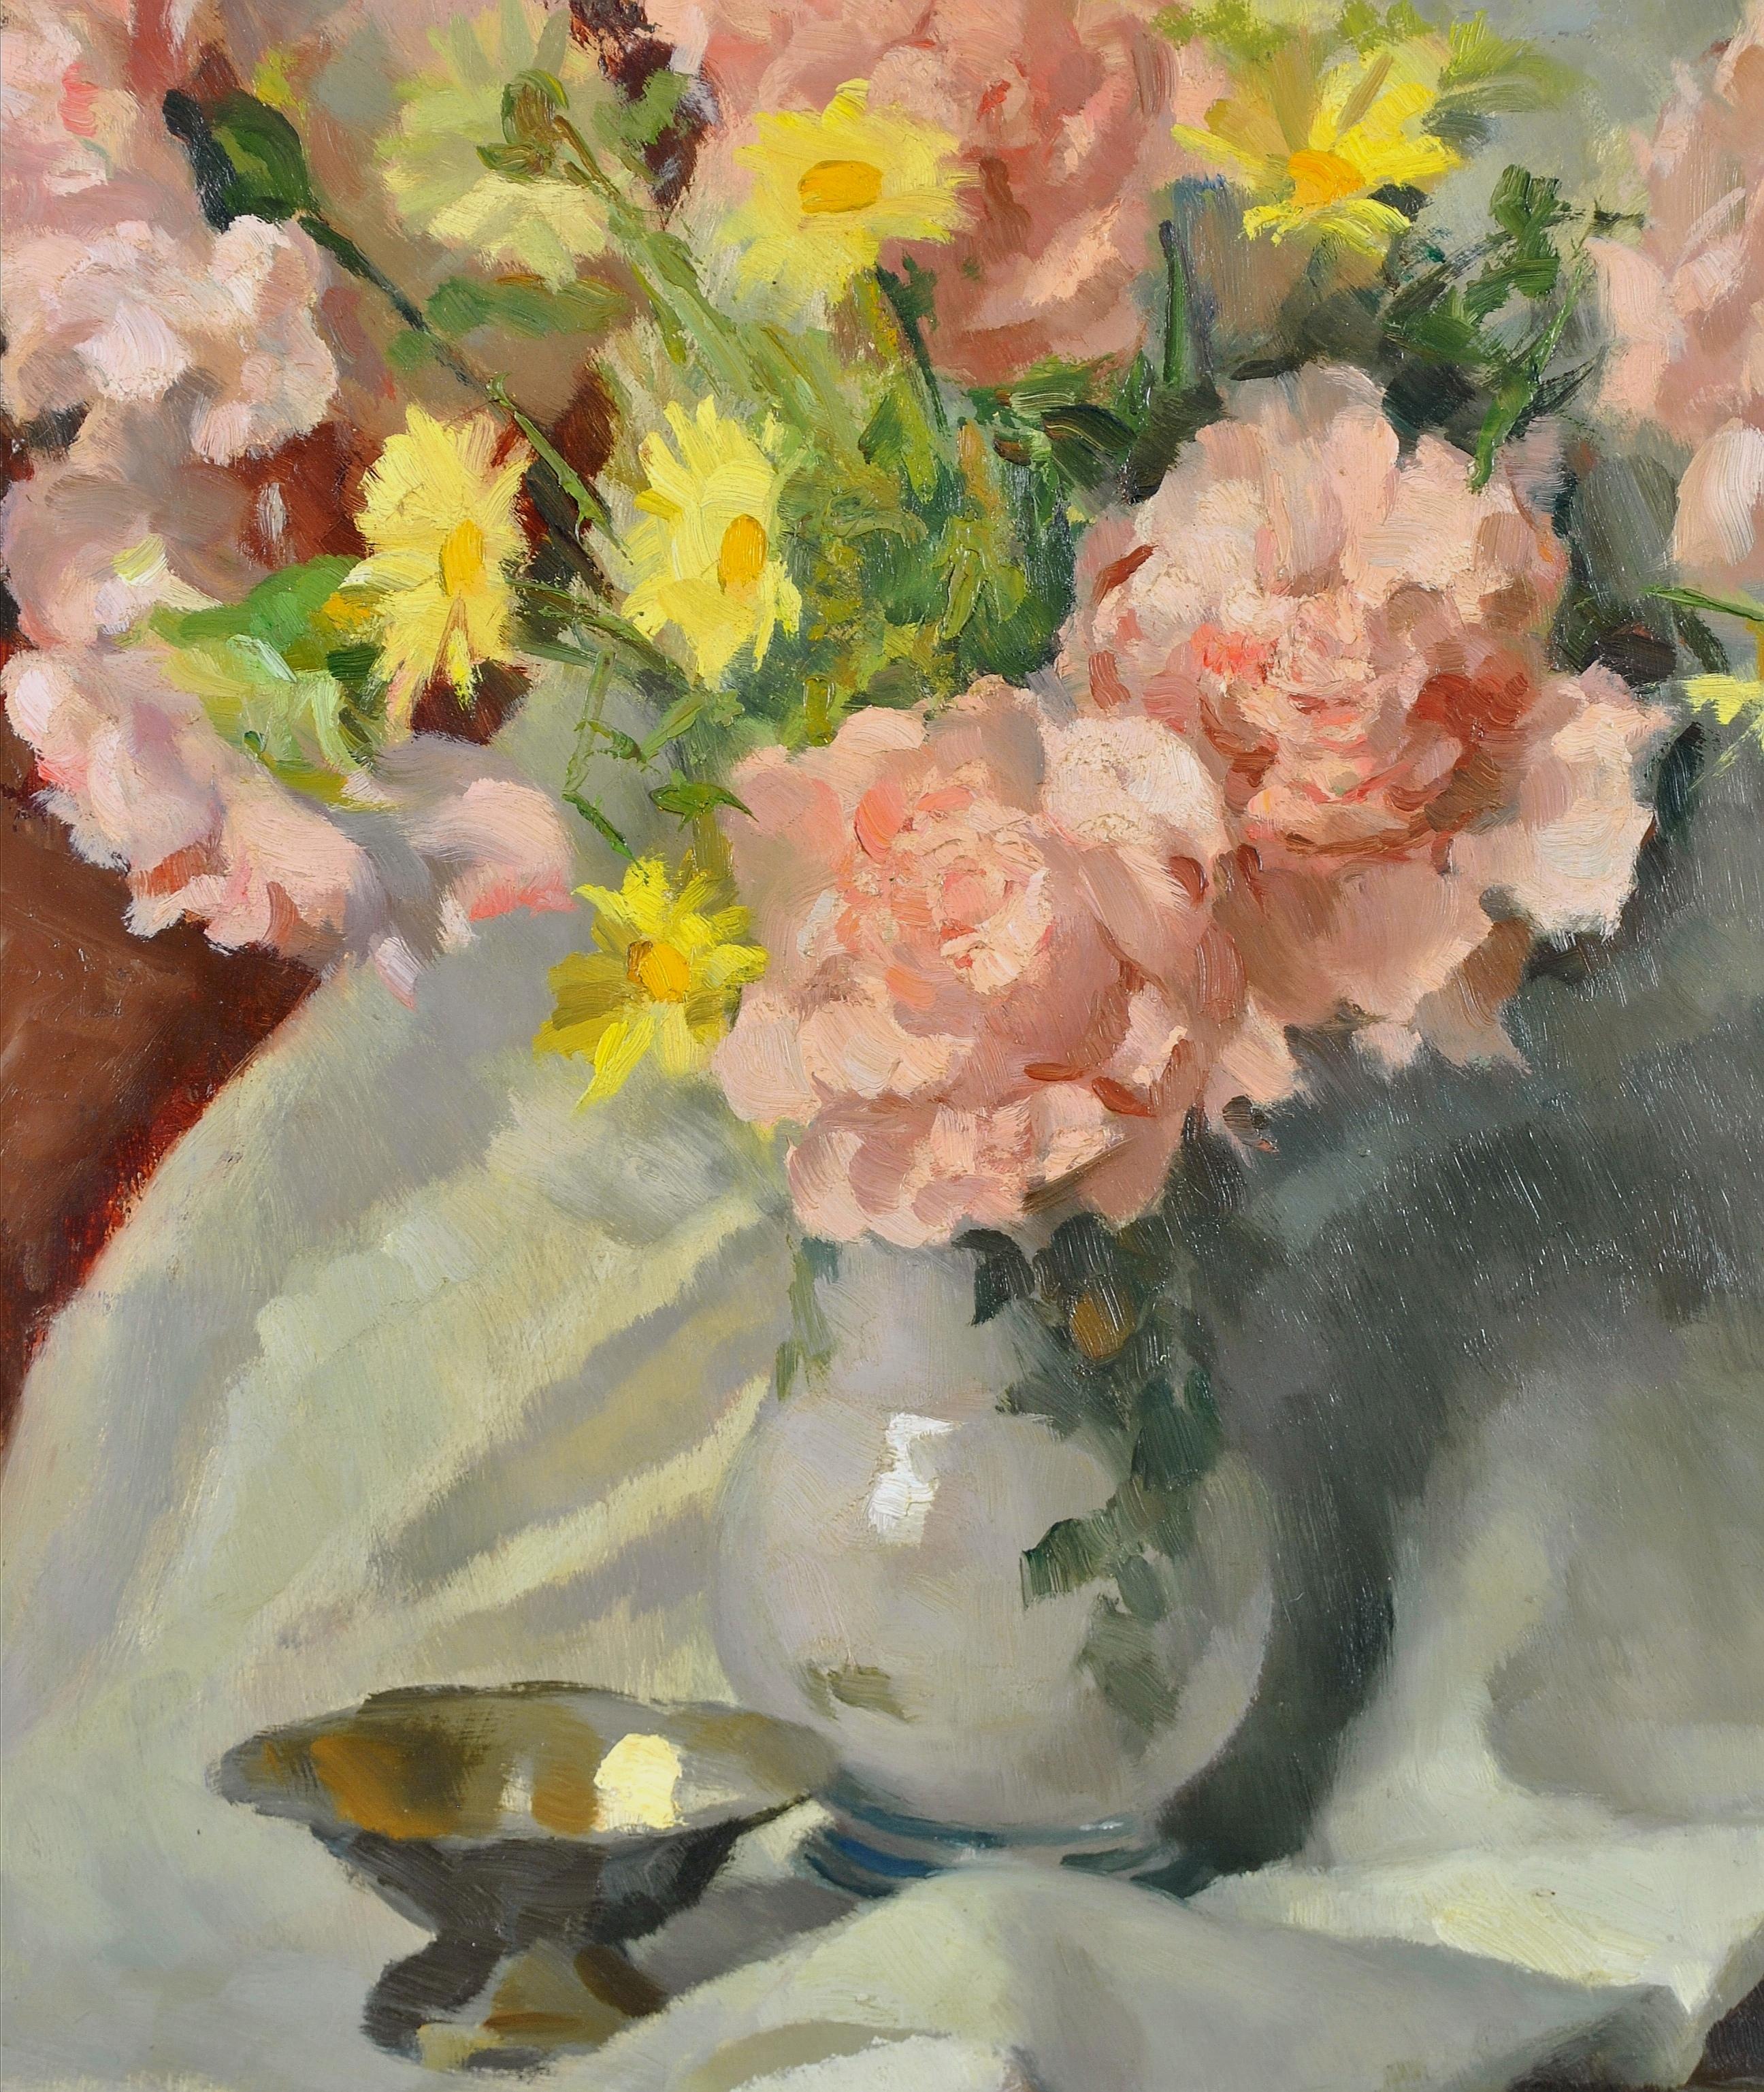 Ein schönes impressionistisches Ölgemälde aus den 1930er Jahren, das Rosen und Wildblumen in einer Vase des italienischen Malers Carlo Marzorati zeigt.

Hervorragende Qualitätsarbeit, die sich in sehr gutem Originalzustand befindet. Unten rechts